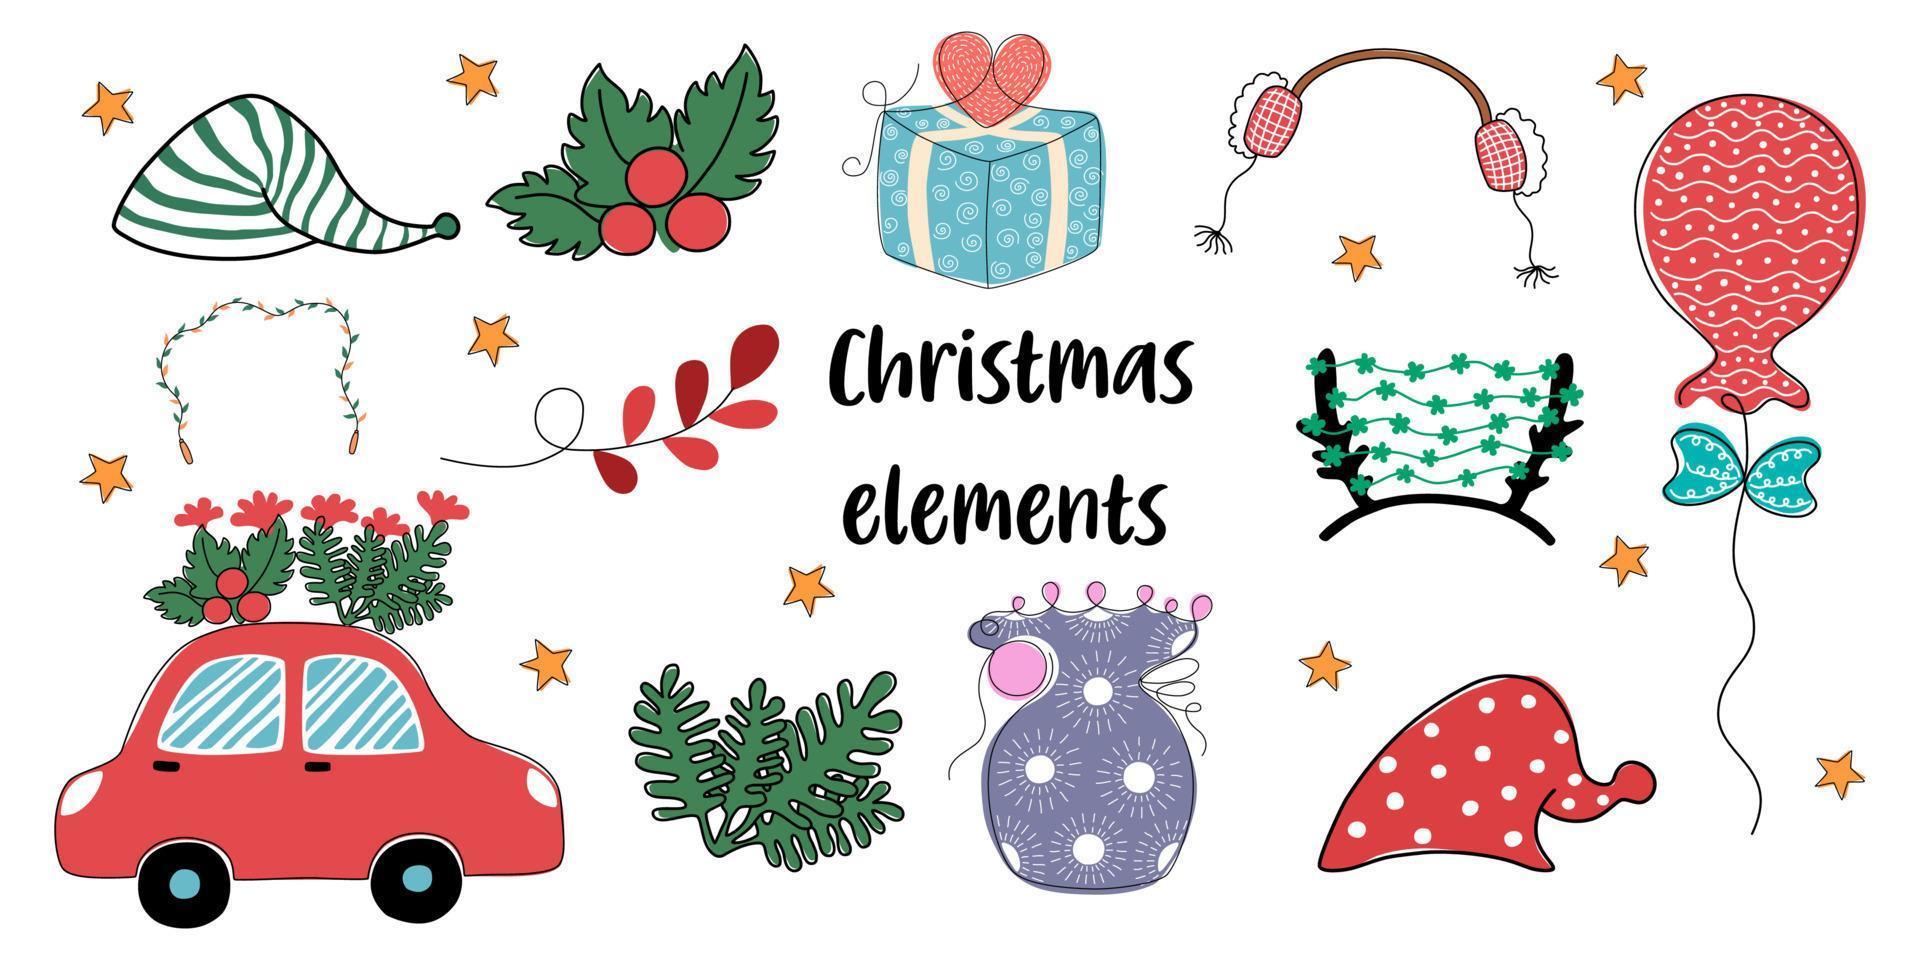 Weihnachtselemente im Doodle-Stil für weihnachtliche Dekorationen, Karten, Sammelalben, Digitaldrucke, Taschendesigns, Stoffmuster und mehr. vektor